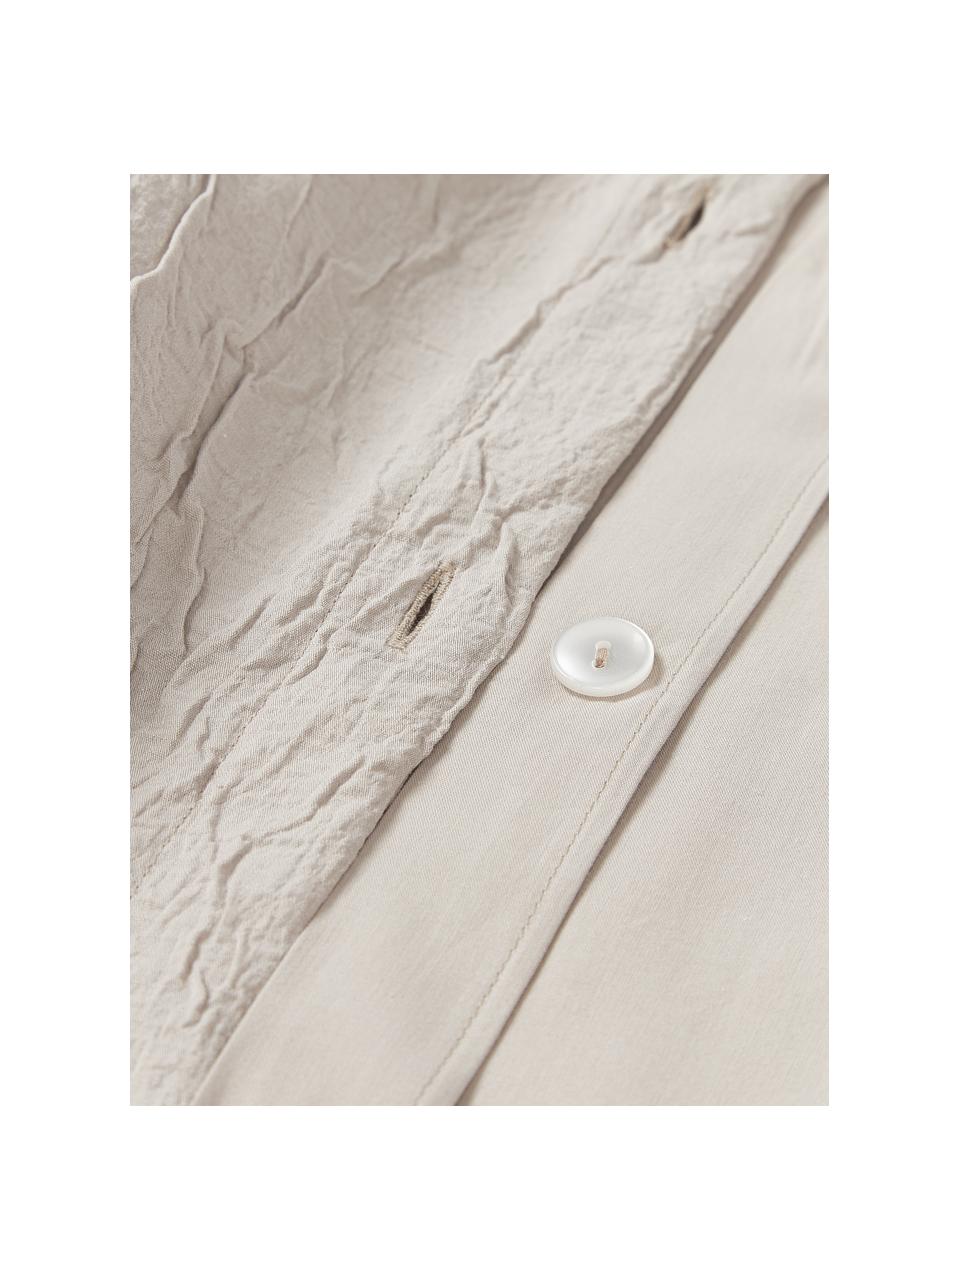 Copripiumino in cotone percalle Leonora, Retro: 100% cotone, Beige chiaro, Larg. 200 x Lung. 200 cm